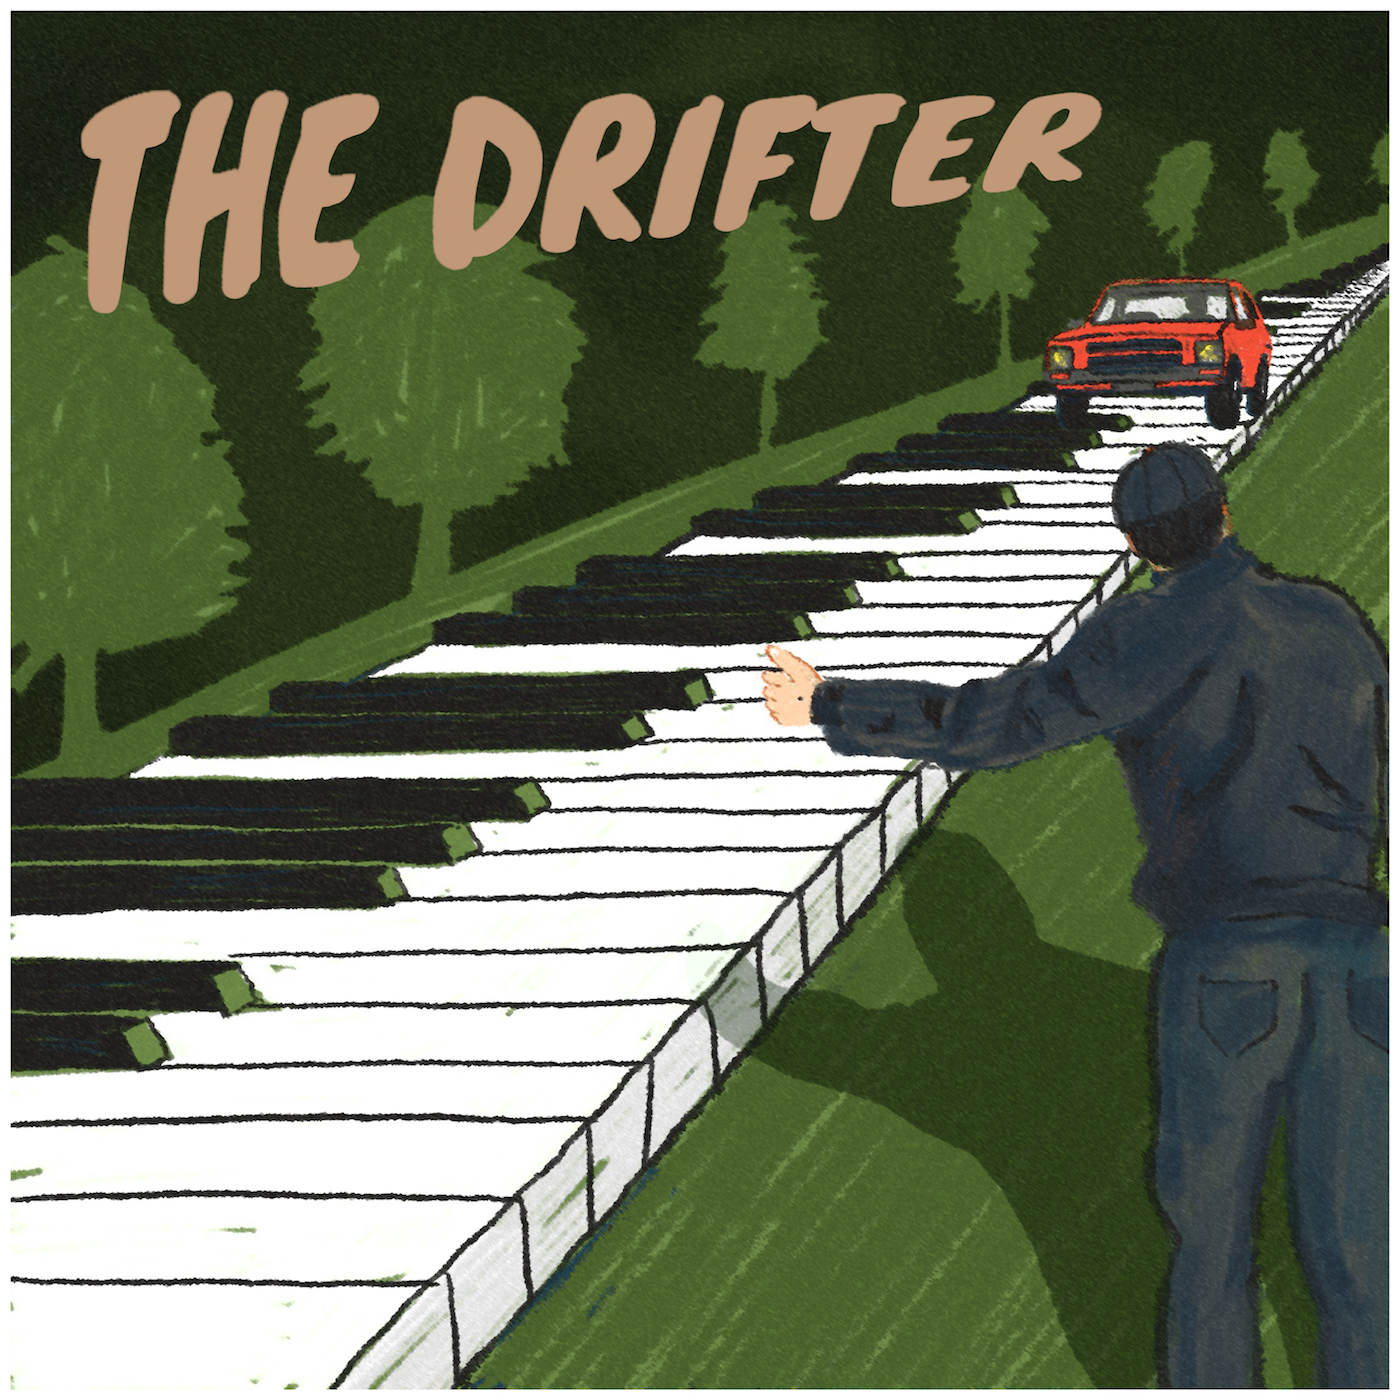 Episode 8 – The Drifter